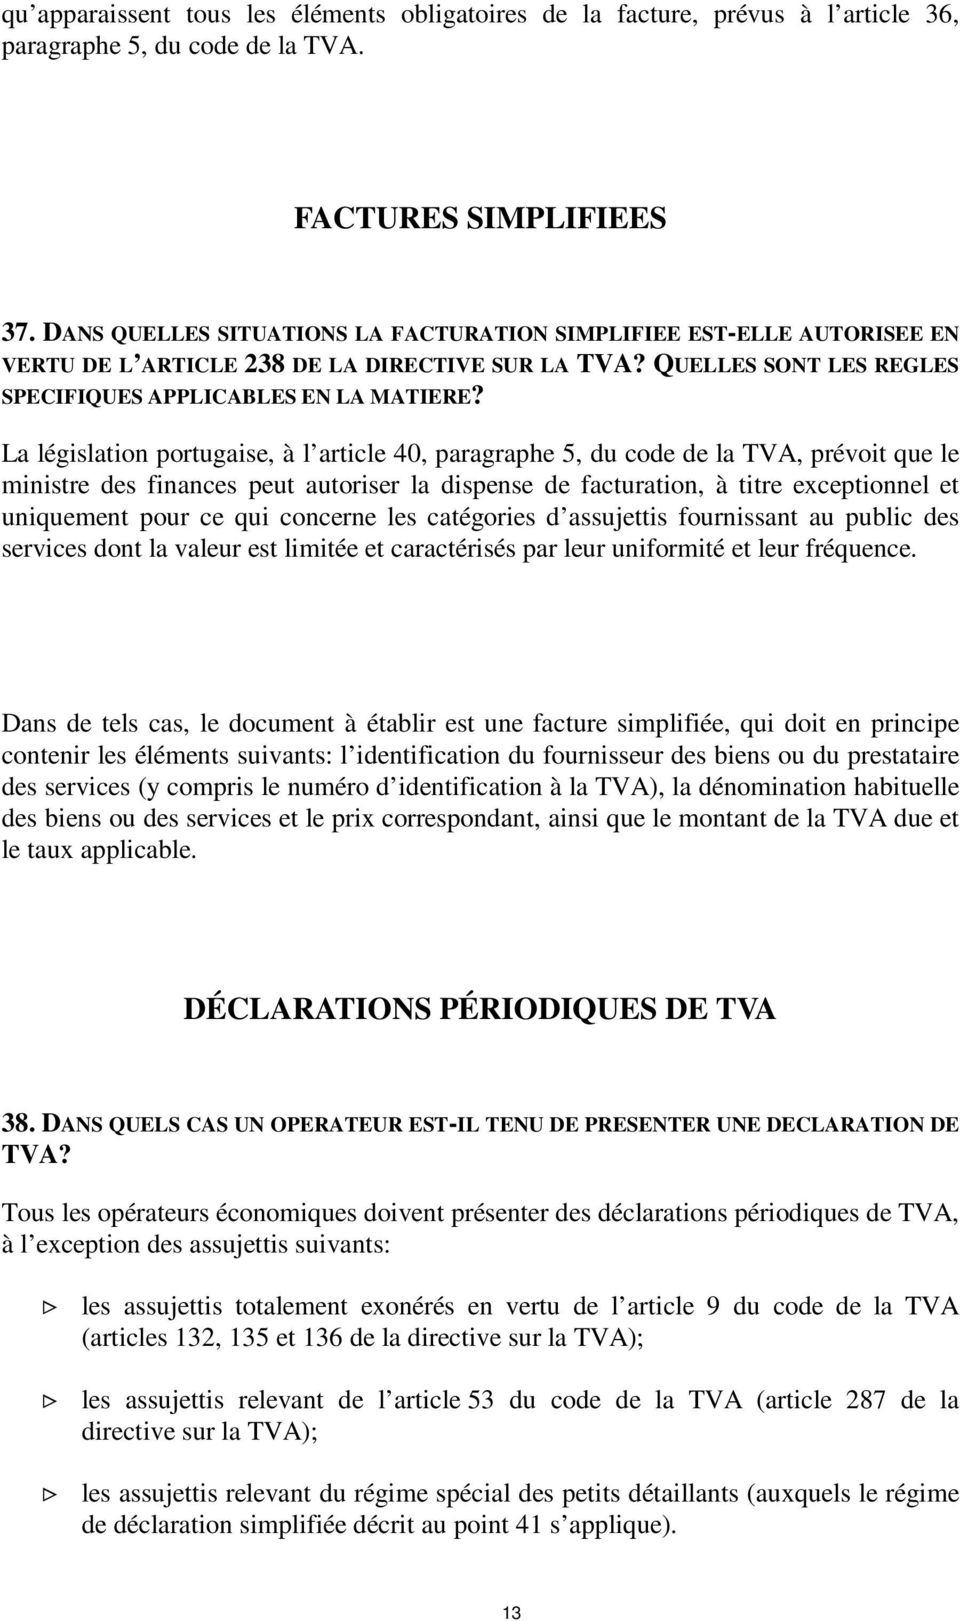 La législation portugaise, à l article 40, paragraphe 5, du code de la TVA, prévoit que le ministre des finances peut autoriser la dispense de facturation, à titre exceptionnel et uniquement pour ce